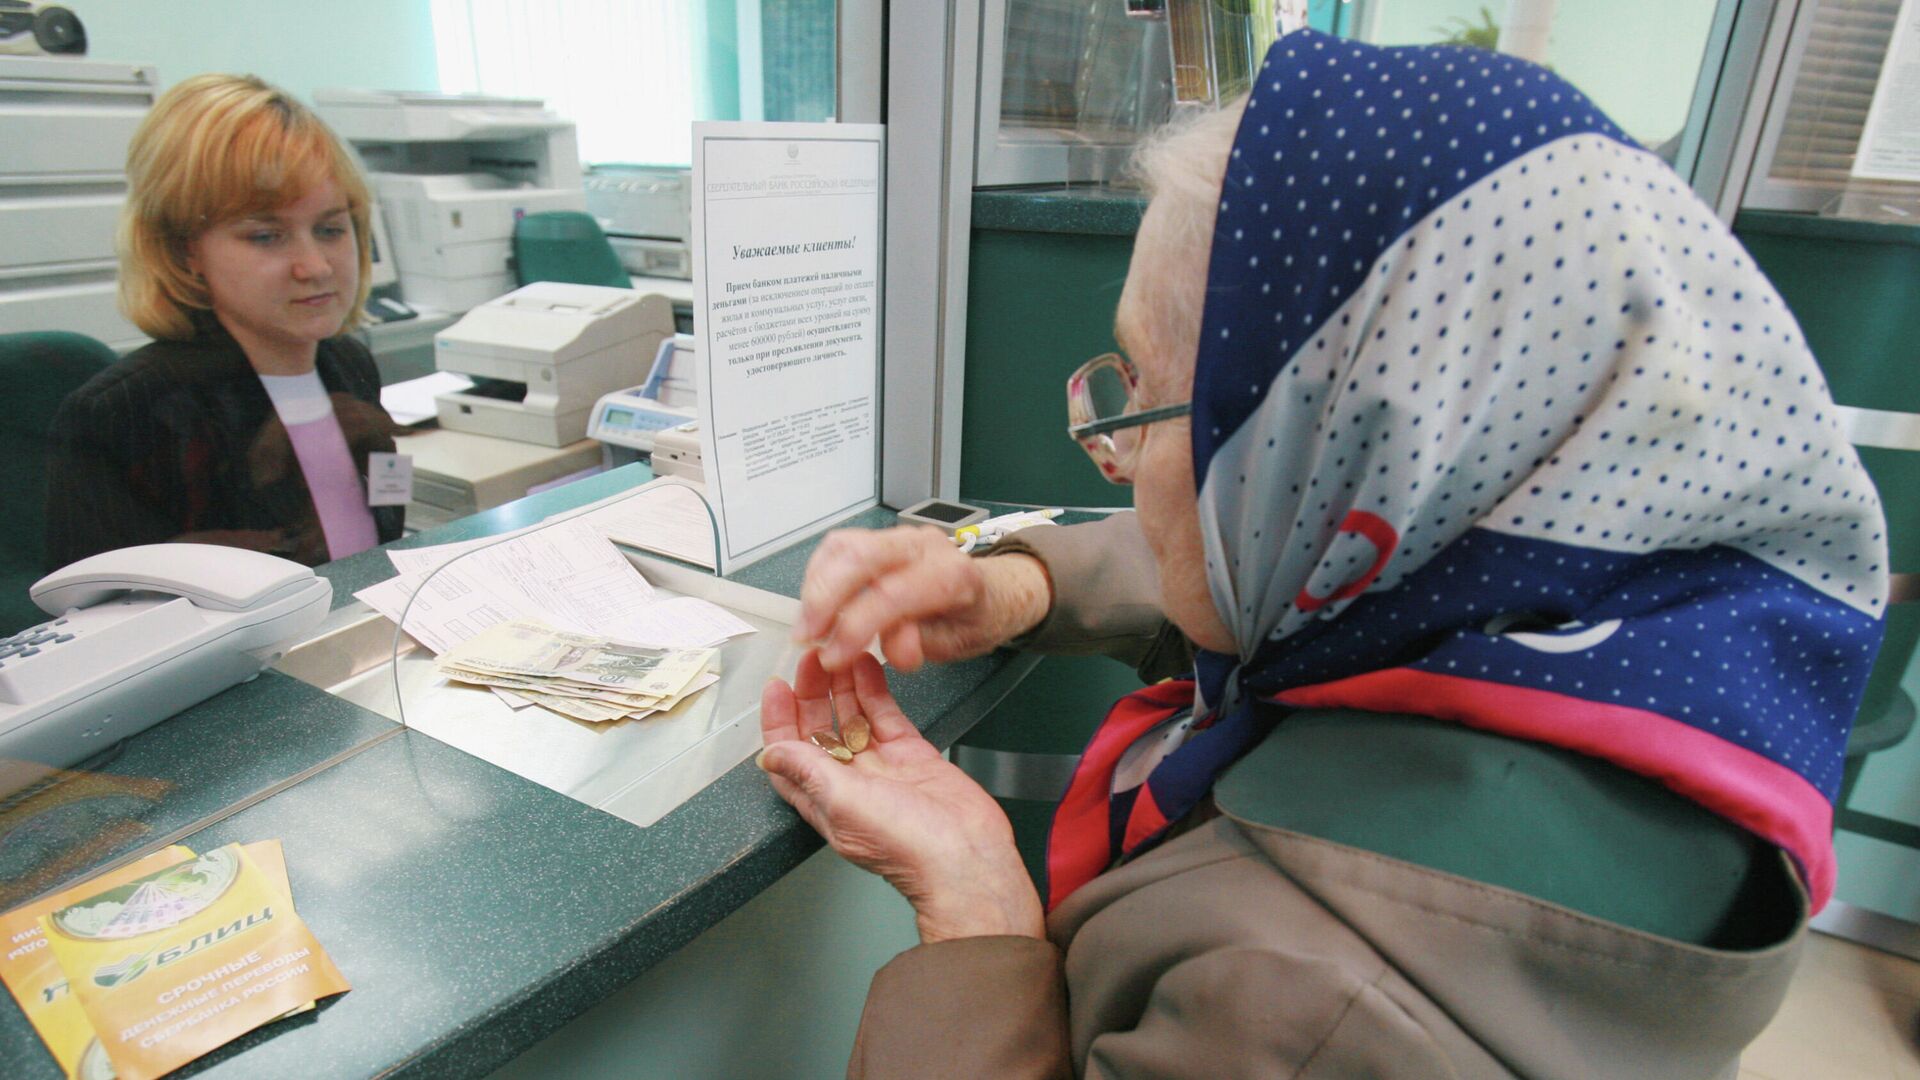 Пожилая женщина в банке - Sputnik Беларусь, 1920, 30.12.2021